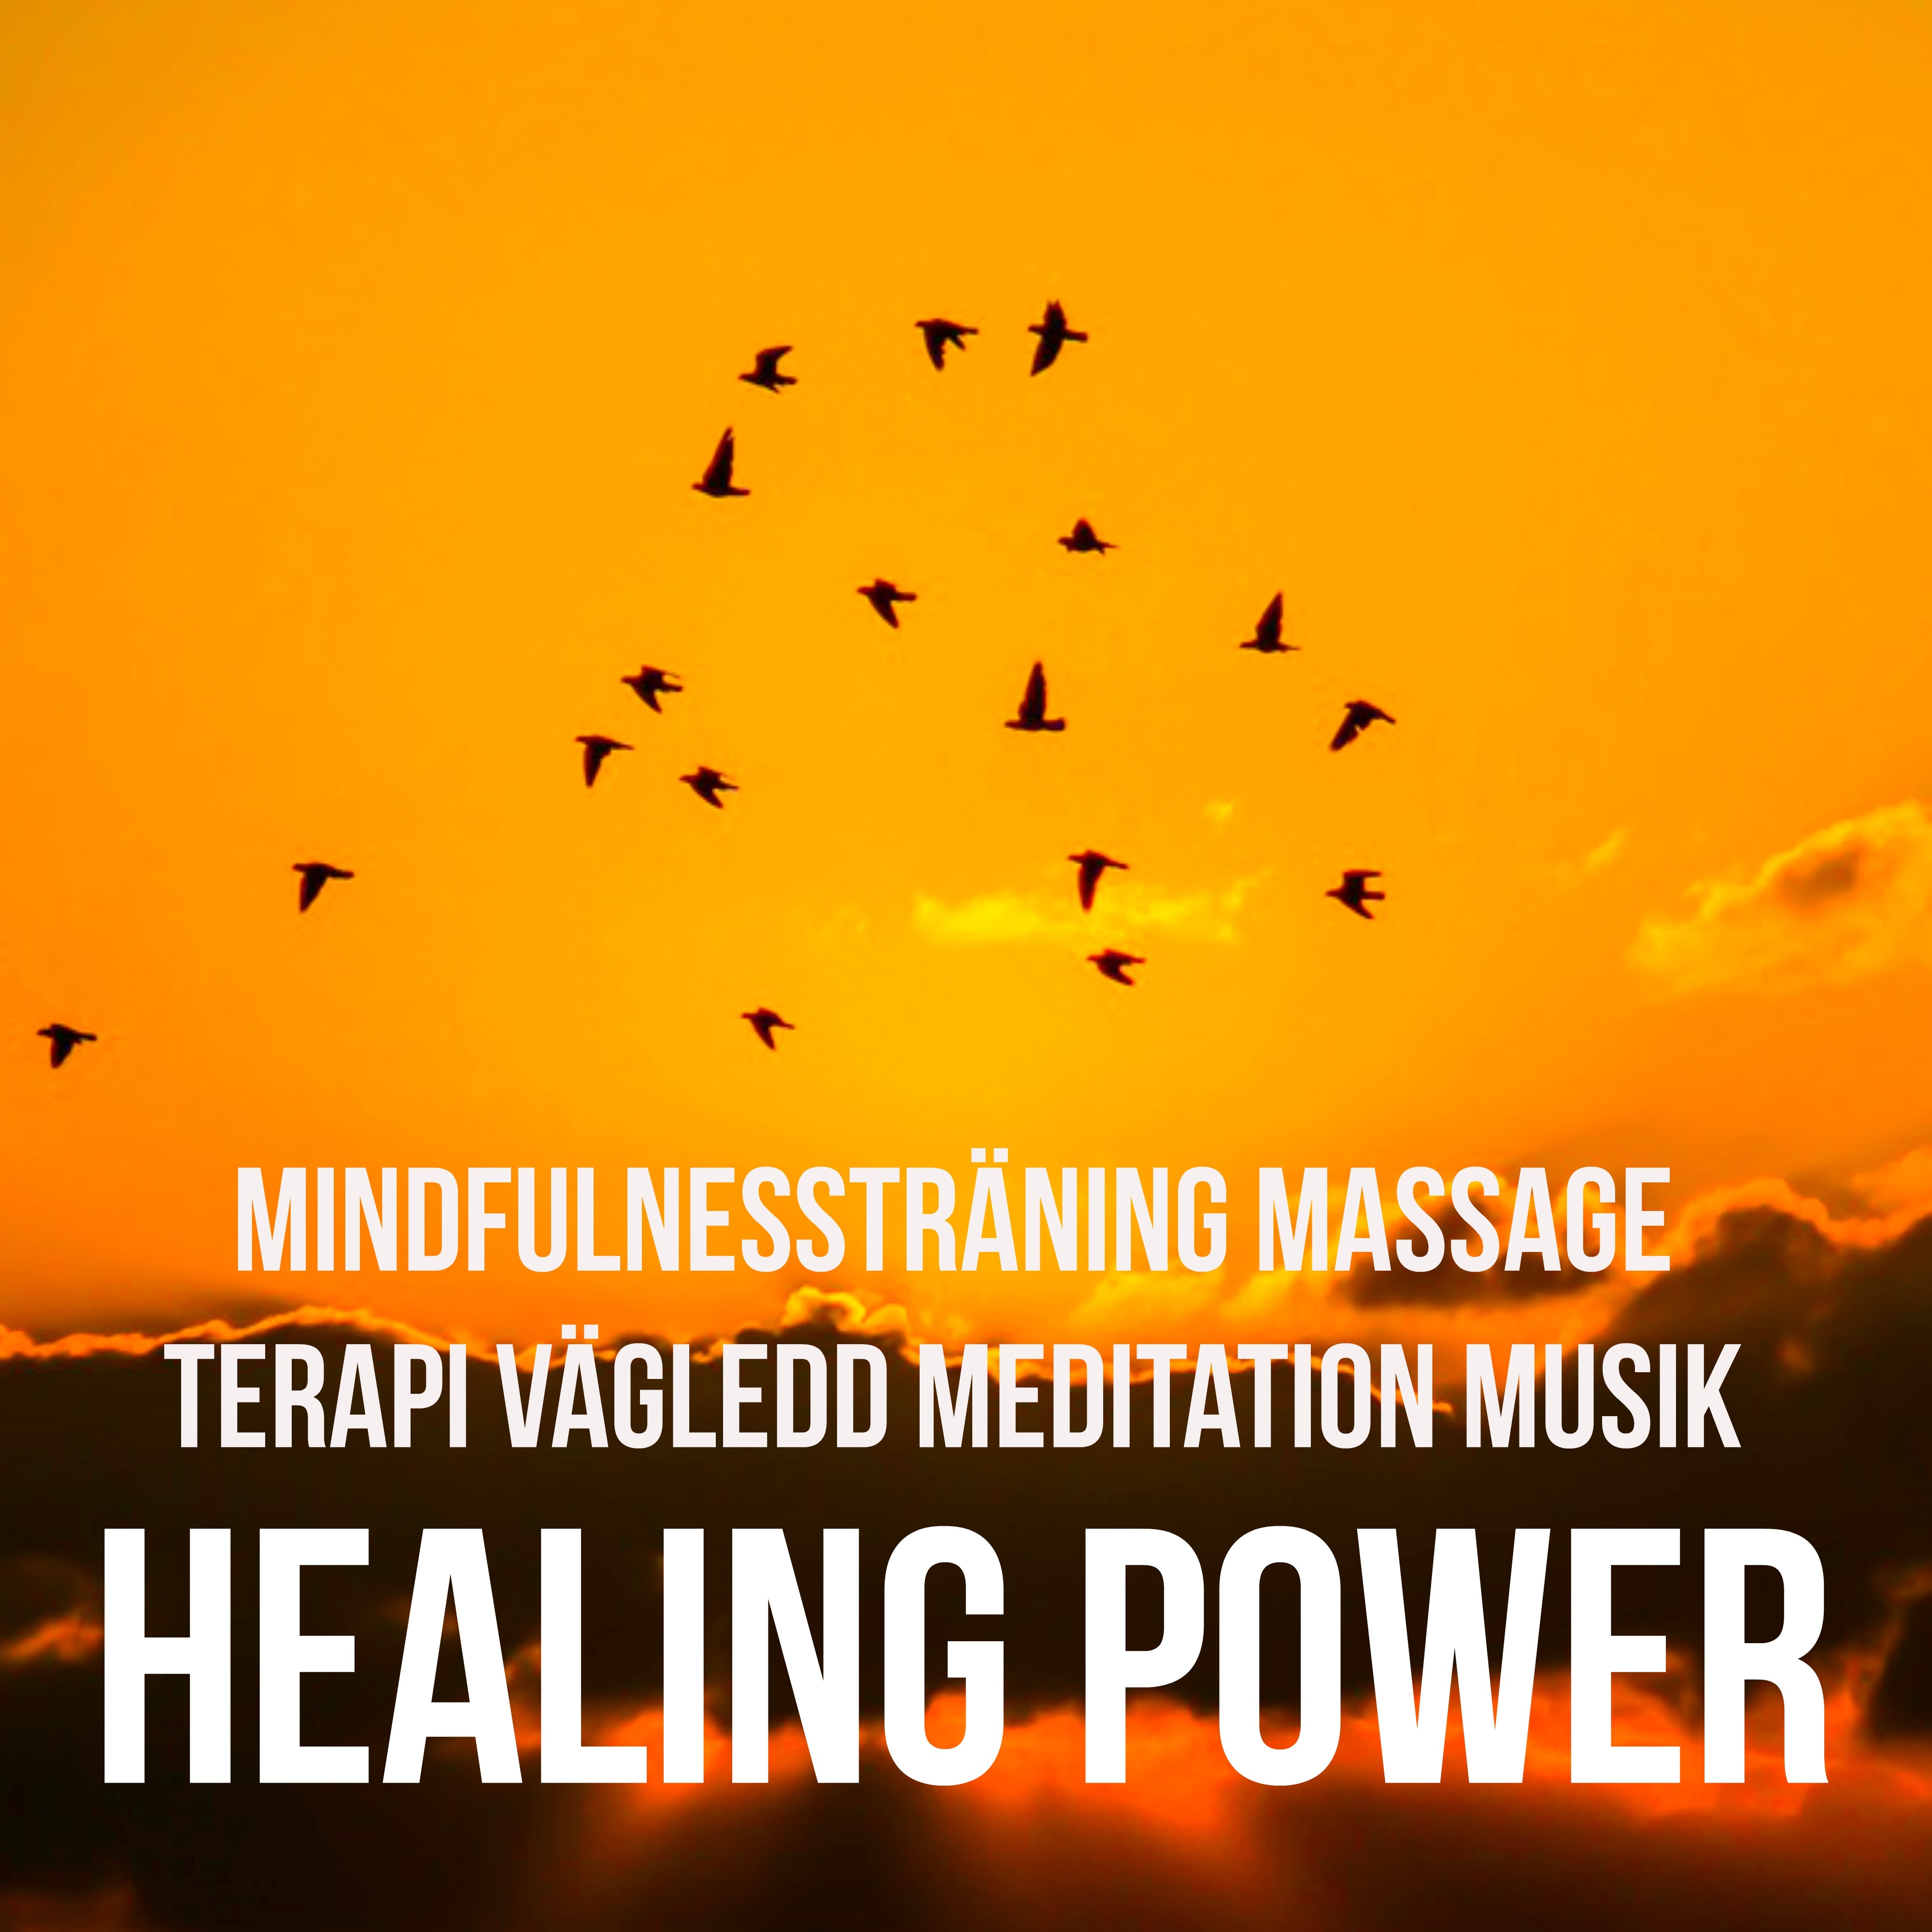 Healing Power - Mindfulnessträning Massage Terapi Vägledd Meditation Musik med Instrumental New Age Lugn Ljud